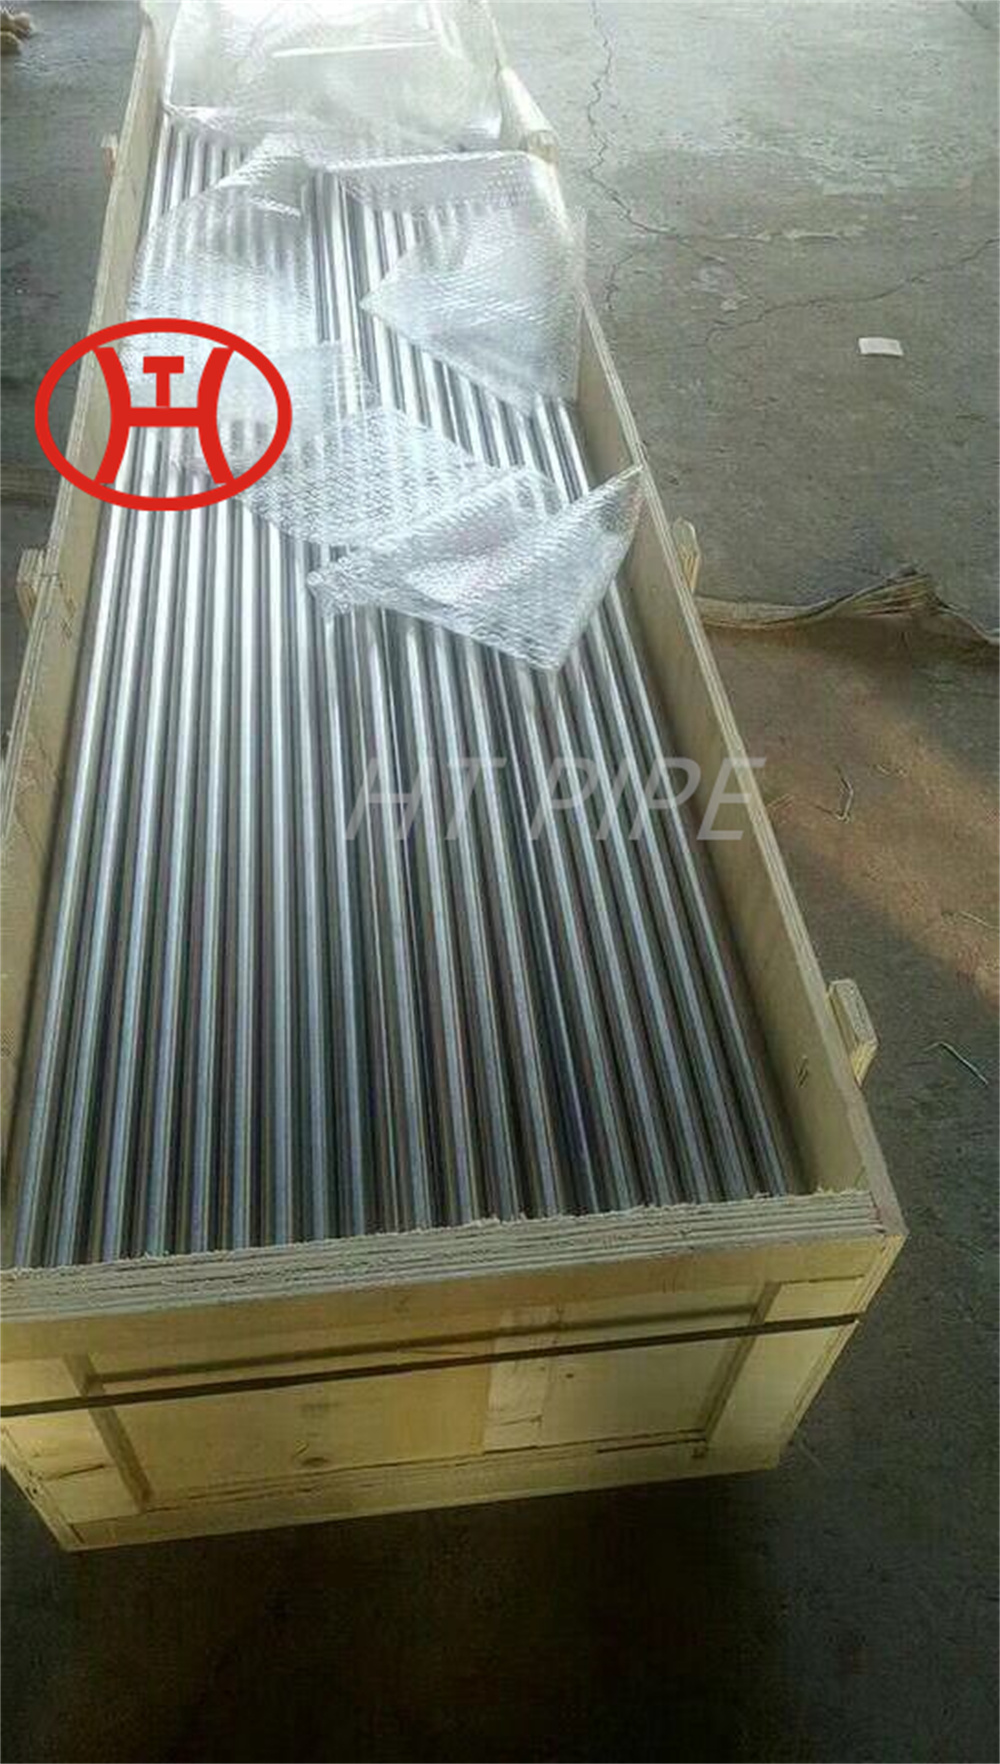 nickel alloy tube inconel 625 tube N06625 2.4856 smls welded steel package